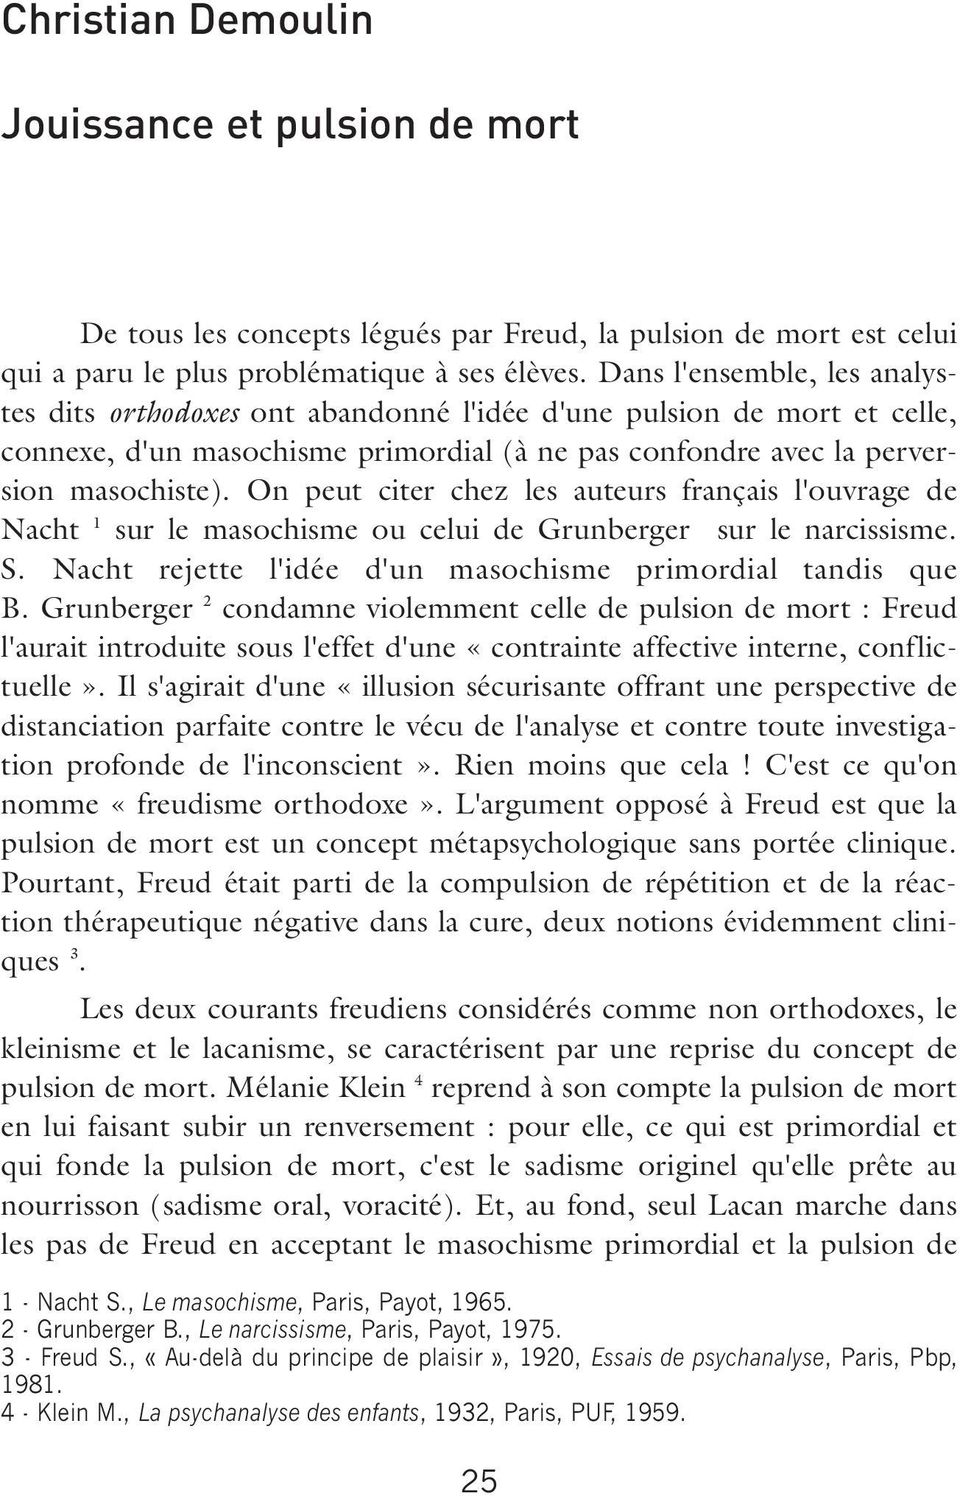 On peut citer chez les auteurs français l'ouvrage de Nacht 1 sur le masochisme ou celui de Grunberger sur le narcissisme. S. Nacht rejette l'idée d'un masochisme primordial tandis que B.